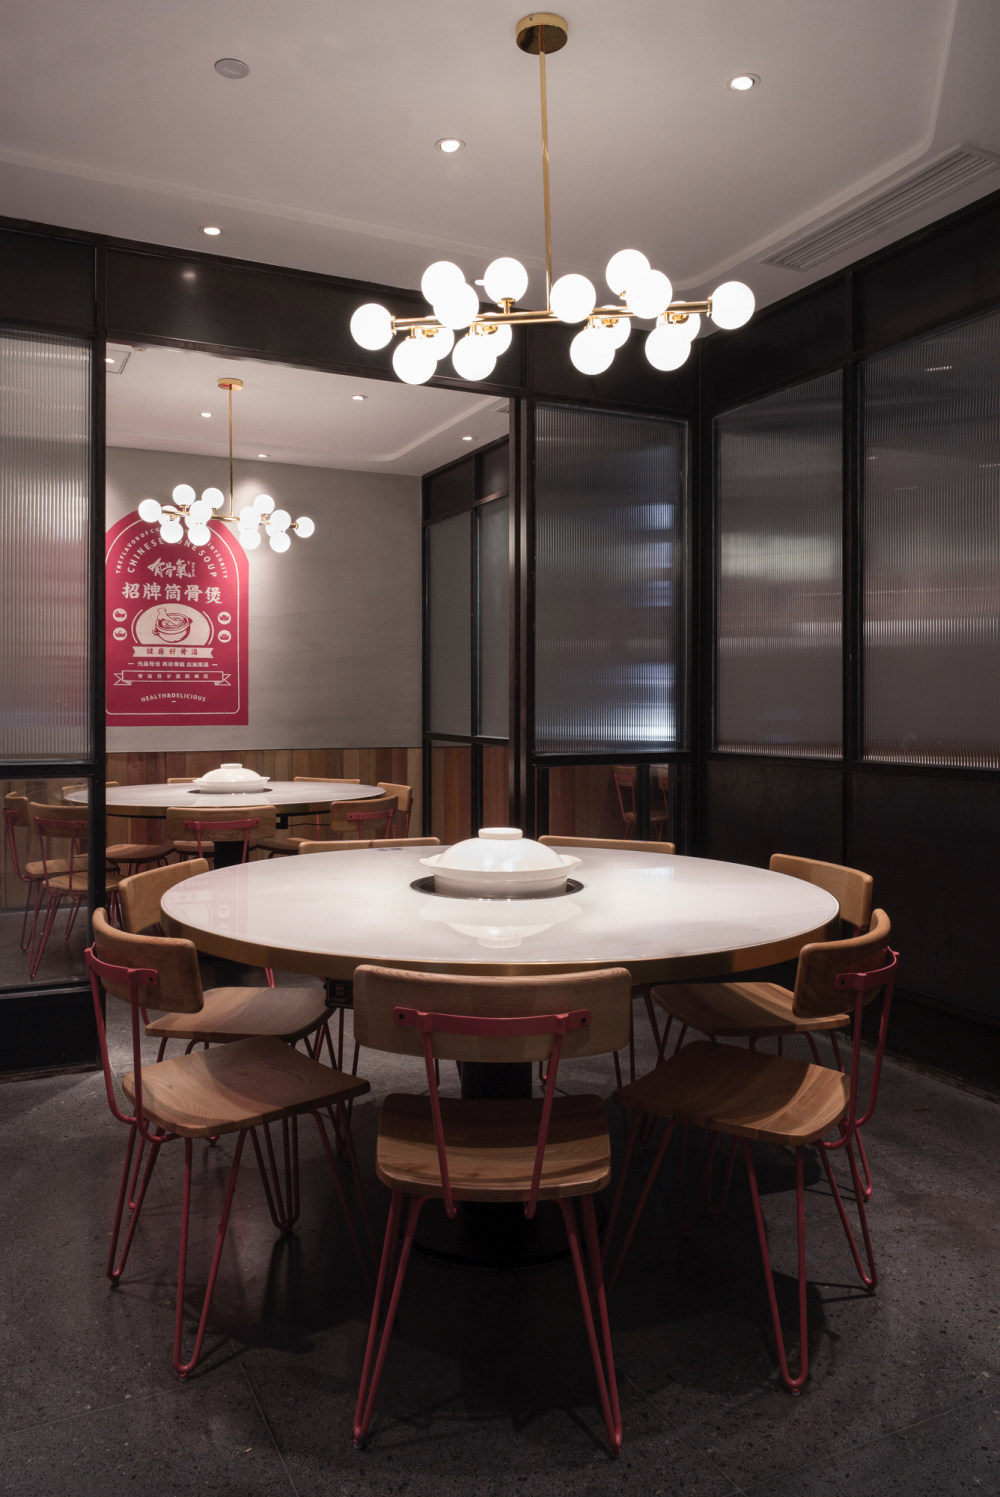 有骨气餐厅-杭州合思室内设计有限公司_L1004725.jpg